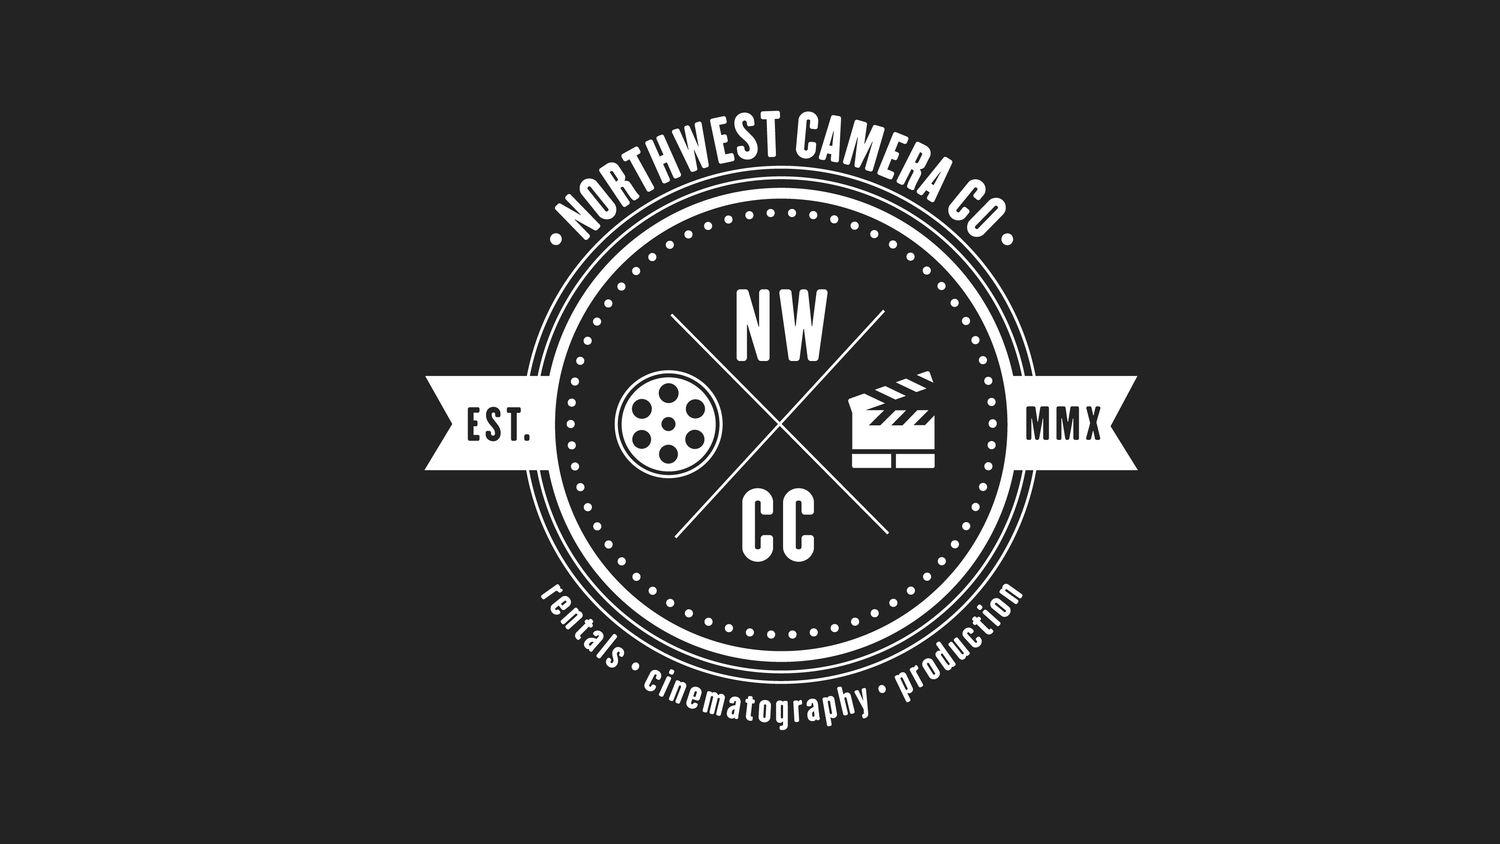 NWCC Logo - Northwest Camera Co